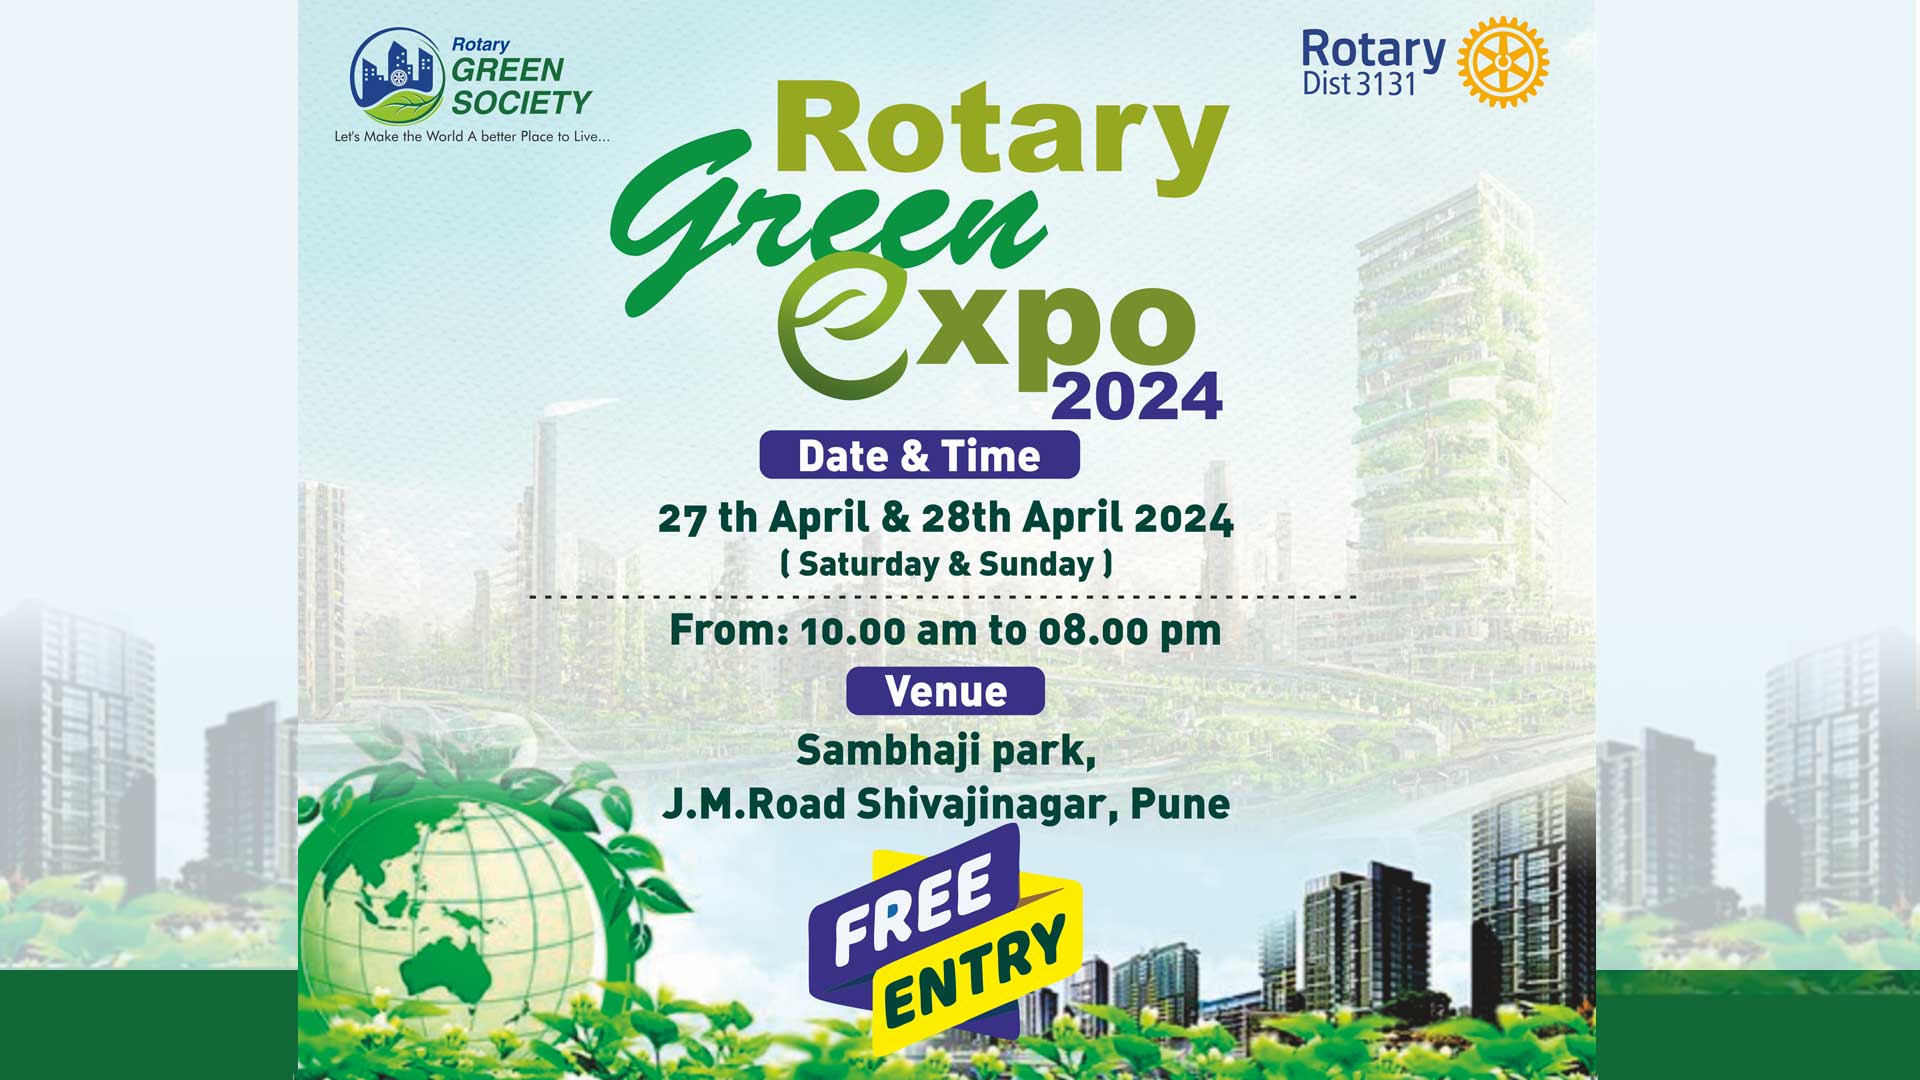 Rotary Green Expo 2024